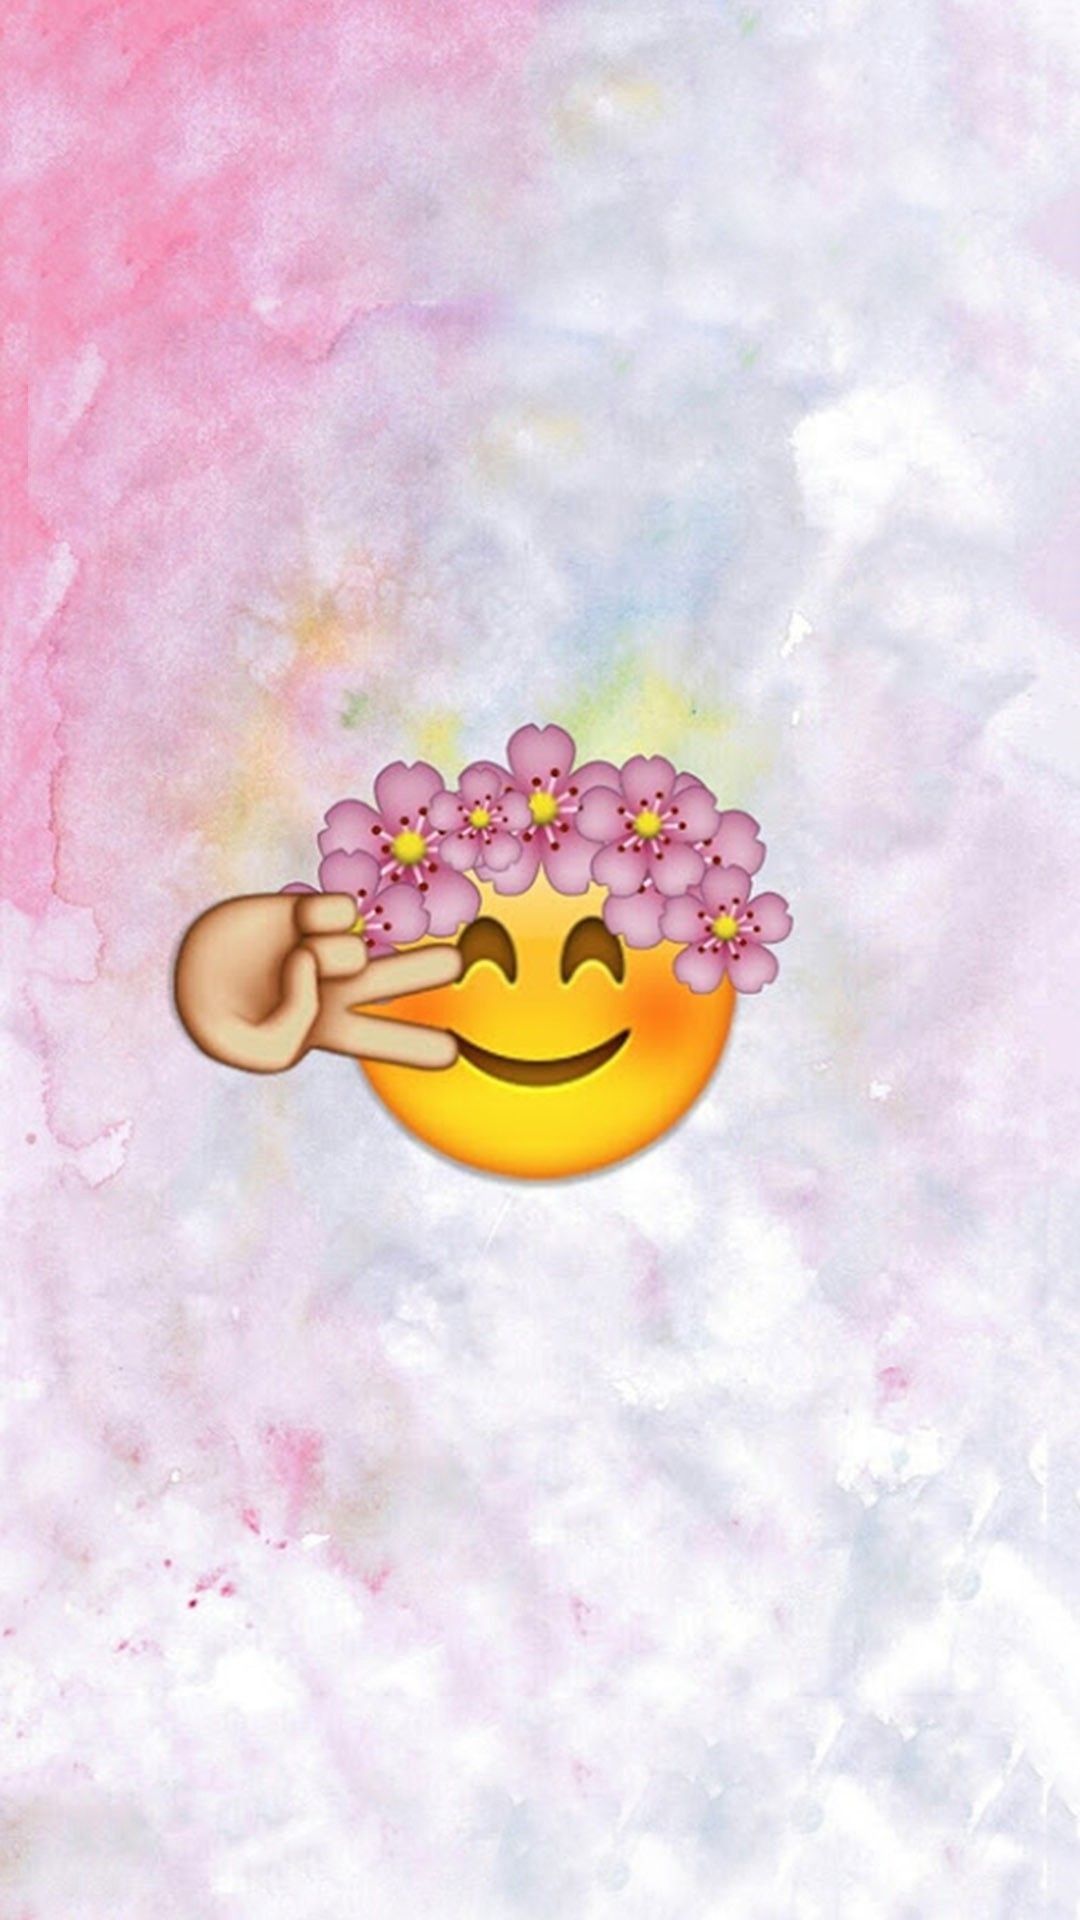 1080x Emoji Wallpaper, Wallpaper For iPhone, Cute